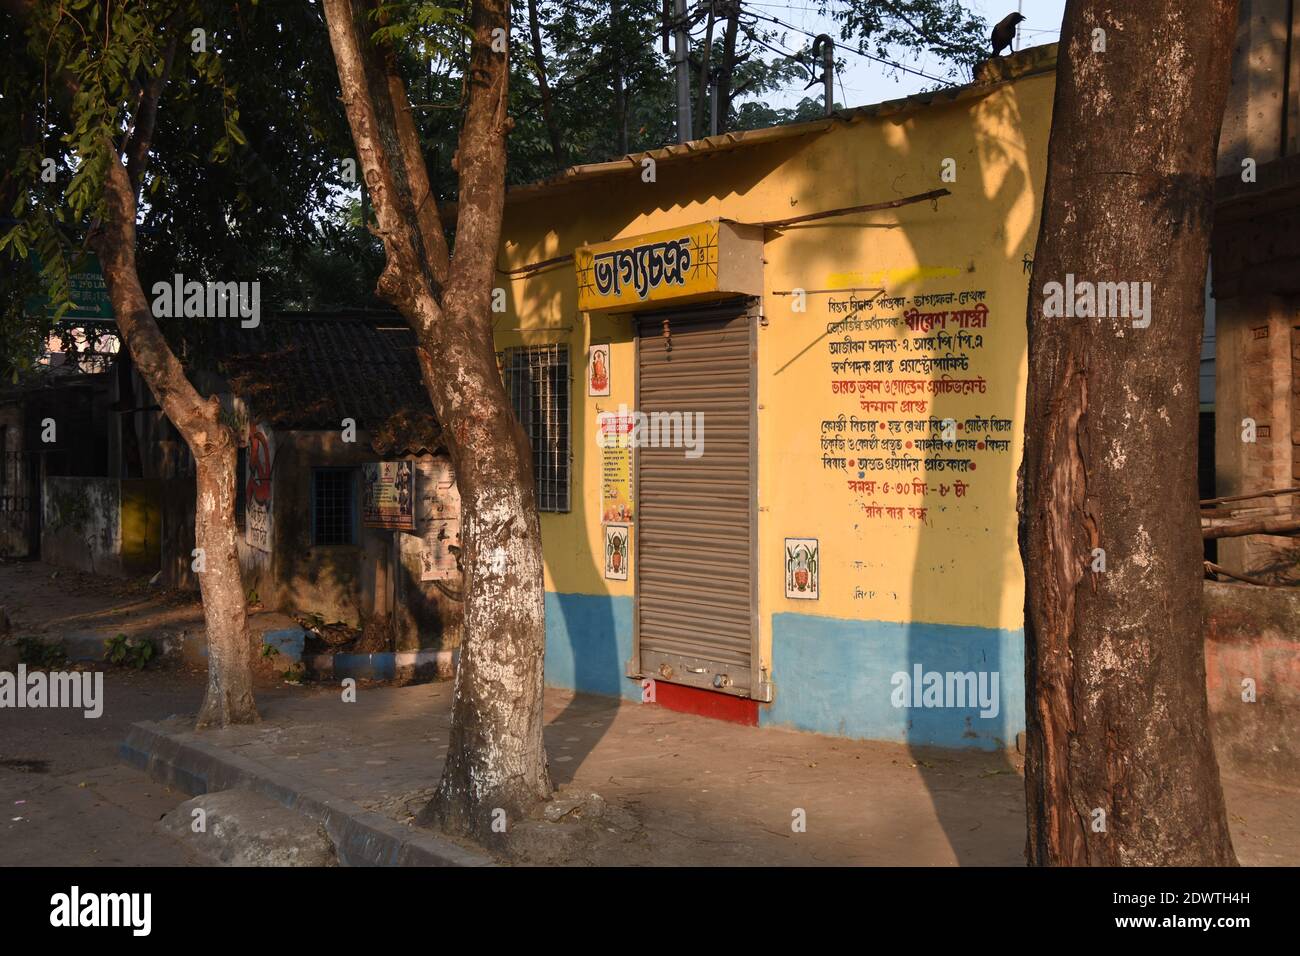 Bhagyachakra. A fortune teller's office. Kalikapur Road, Kolkata. Stock Photo